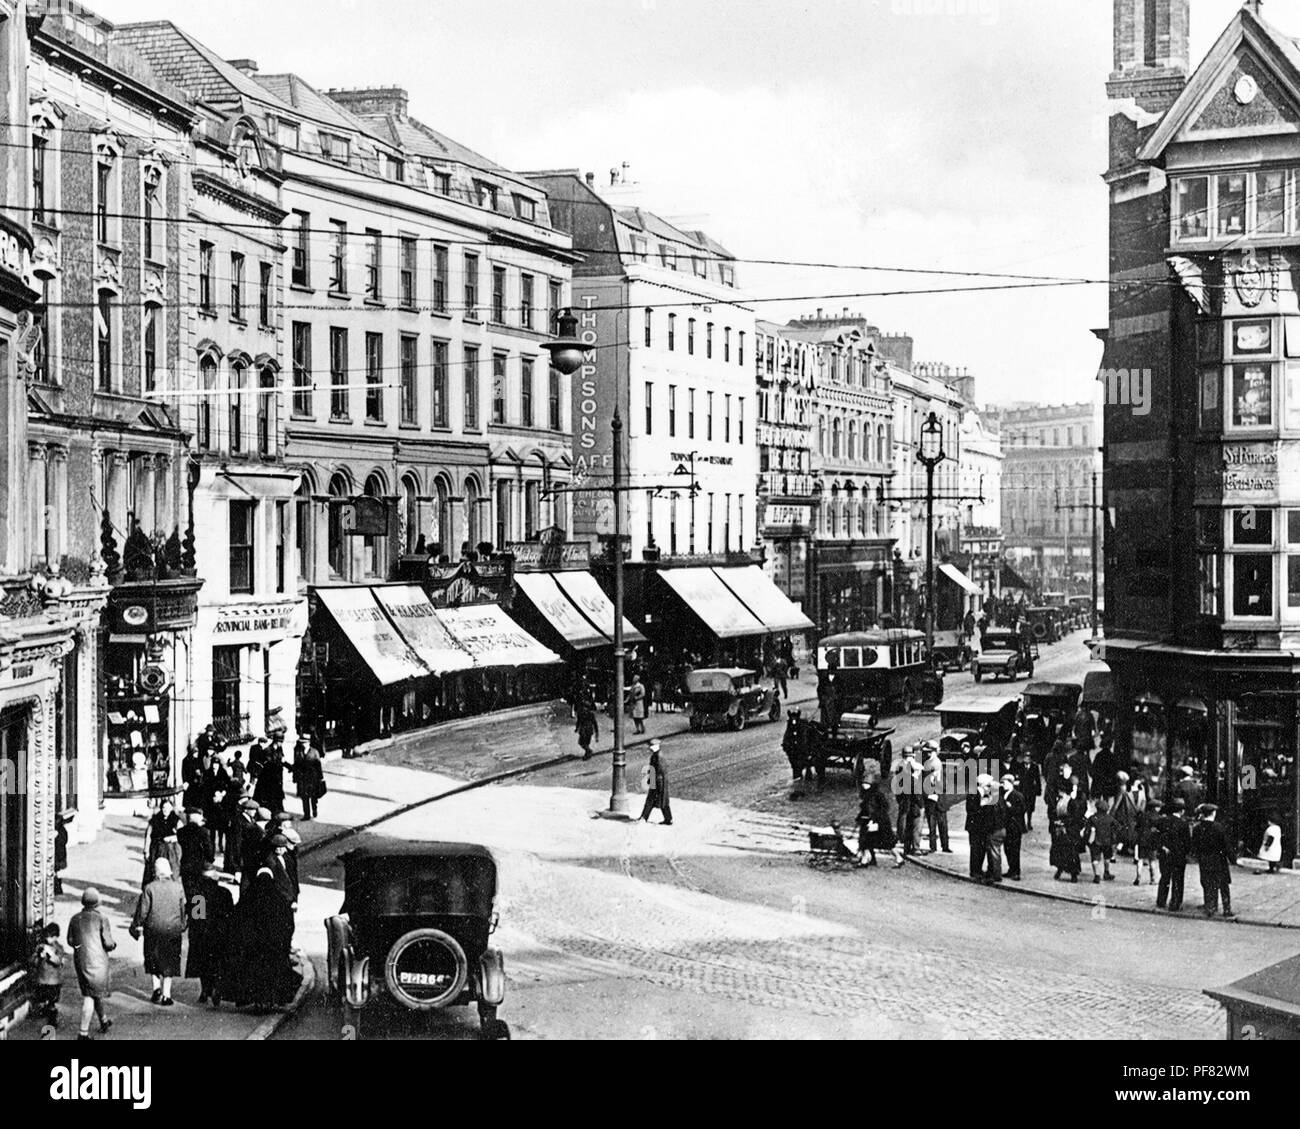 Patrick Street, Cork, Ireland, early 1900s Stock Photo